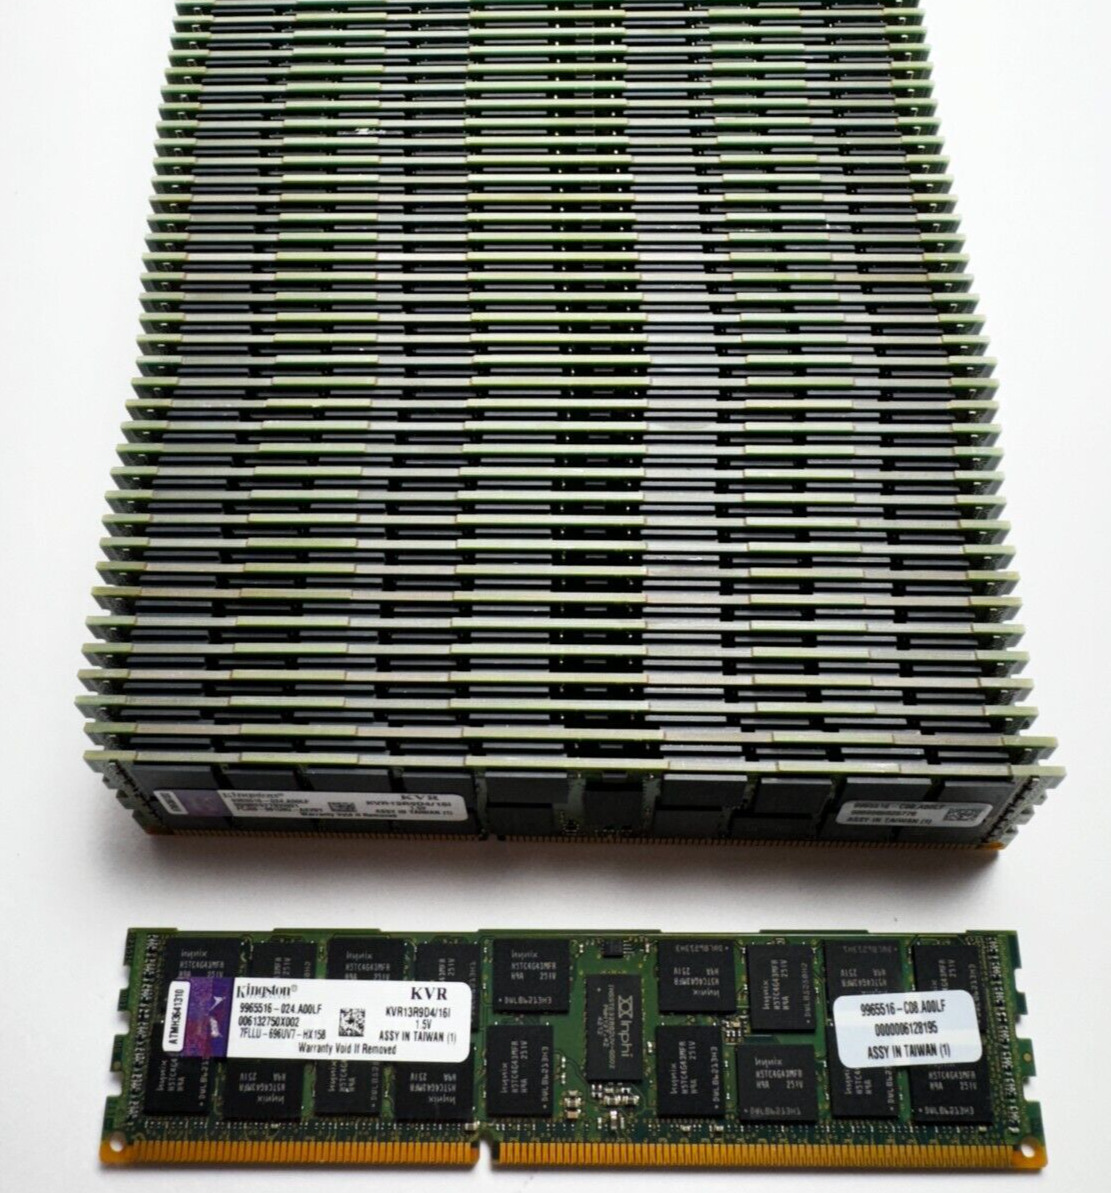 64GB Kingston (4x16GB) PC3-10600R ECC RDIMM 2Rx4 KVR13R9D4/16I Server Memory RAM